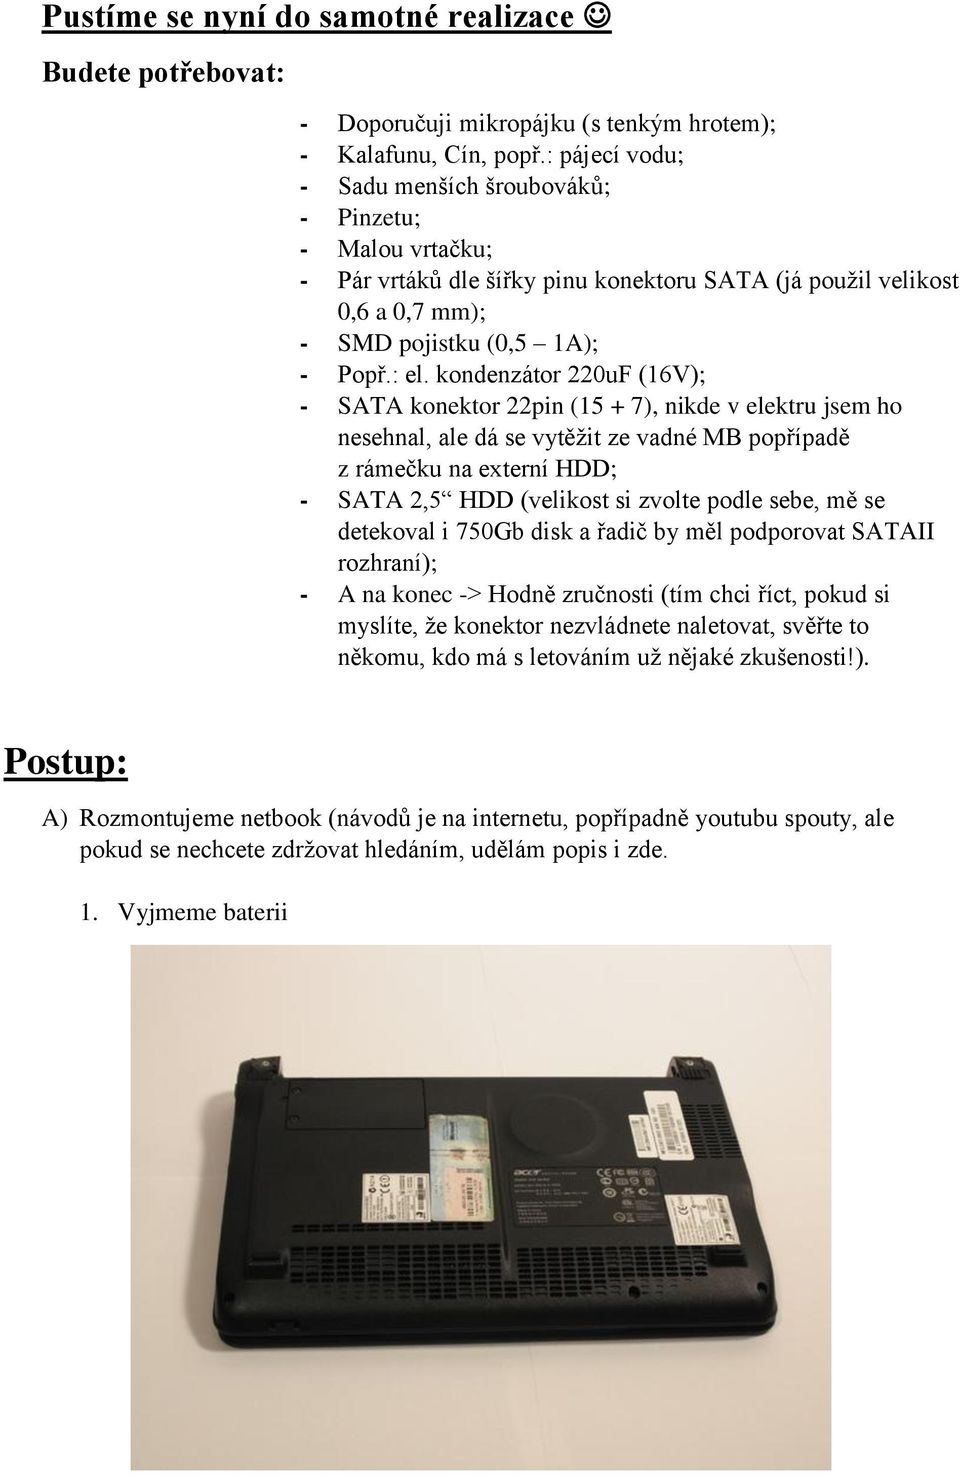 kondenzátor 220uF (16V); - SATA konektor 22pin (15 + 7), nikde v elektru jsem ho nesehnal, ale dá se vytěžit ze vadné MB popřípadě z rámečku na externí HDD; - SATA 2,5 HDD (velikost si zvolte podle